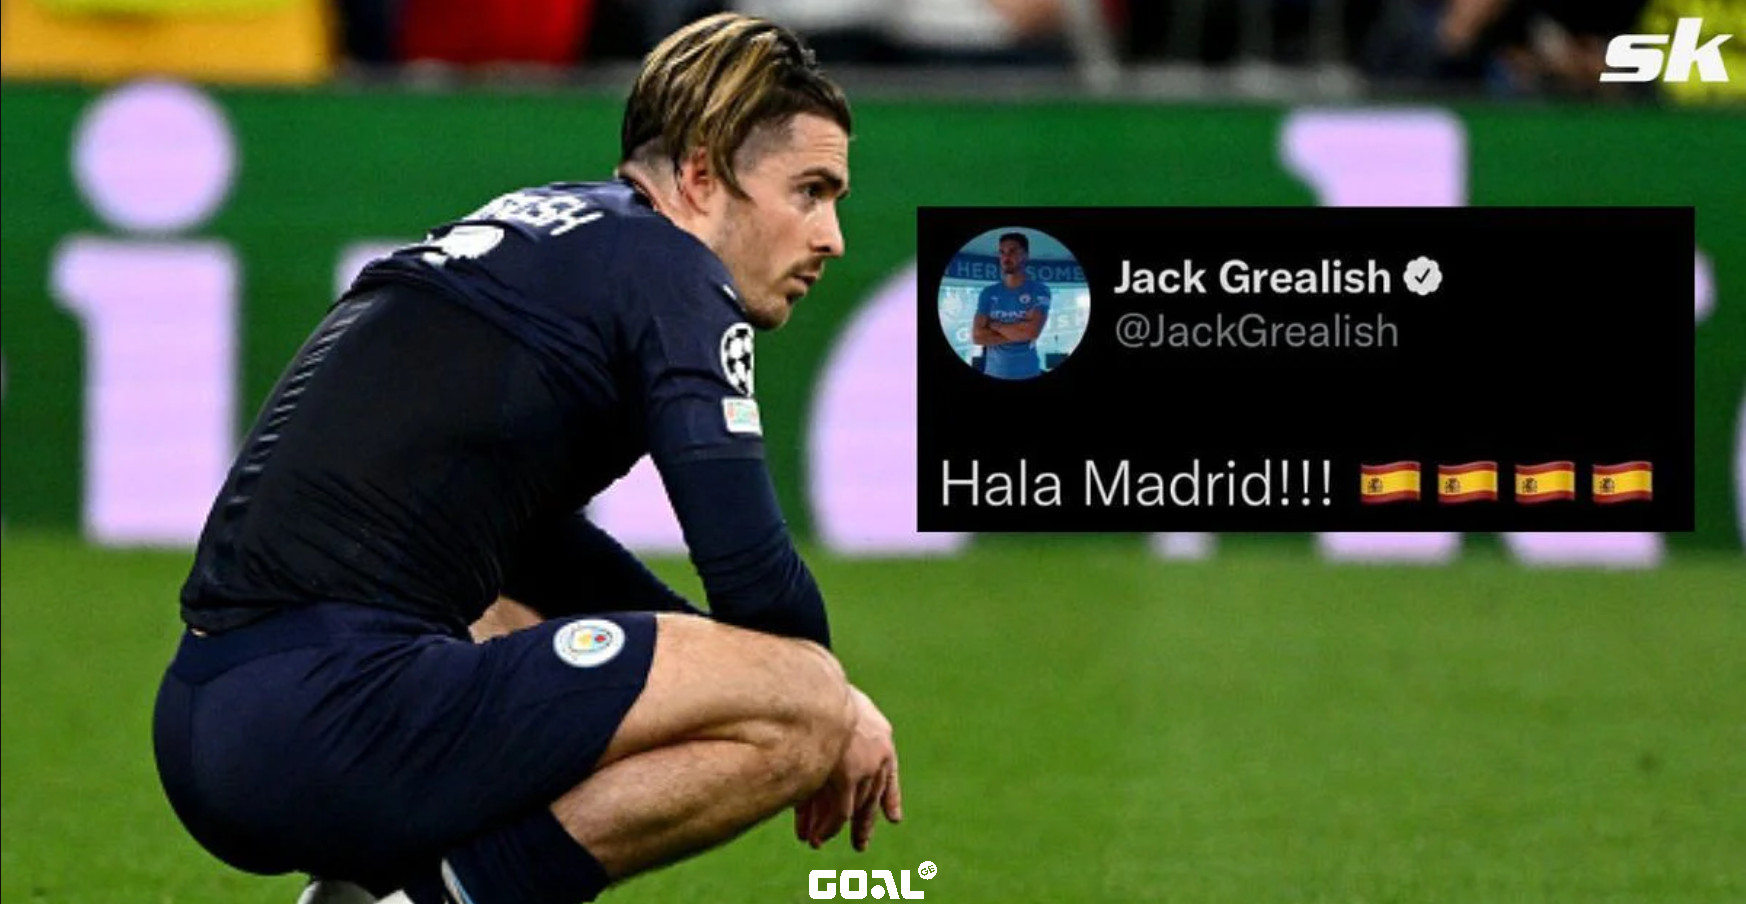 "Hala Madrid!!!", - გრილიშმა 2014 წლის აპრილში დაწერილი ტვიტი წაშალა